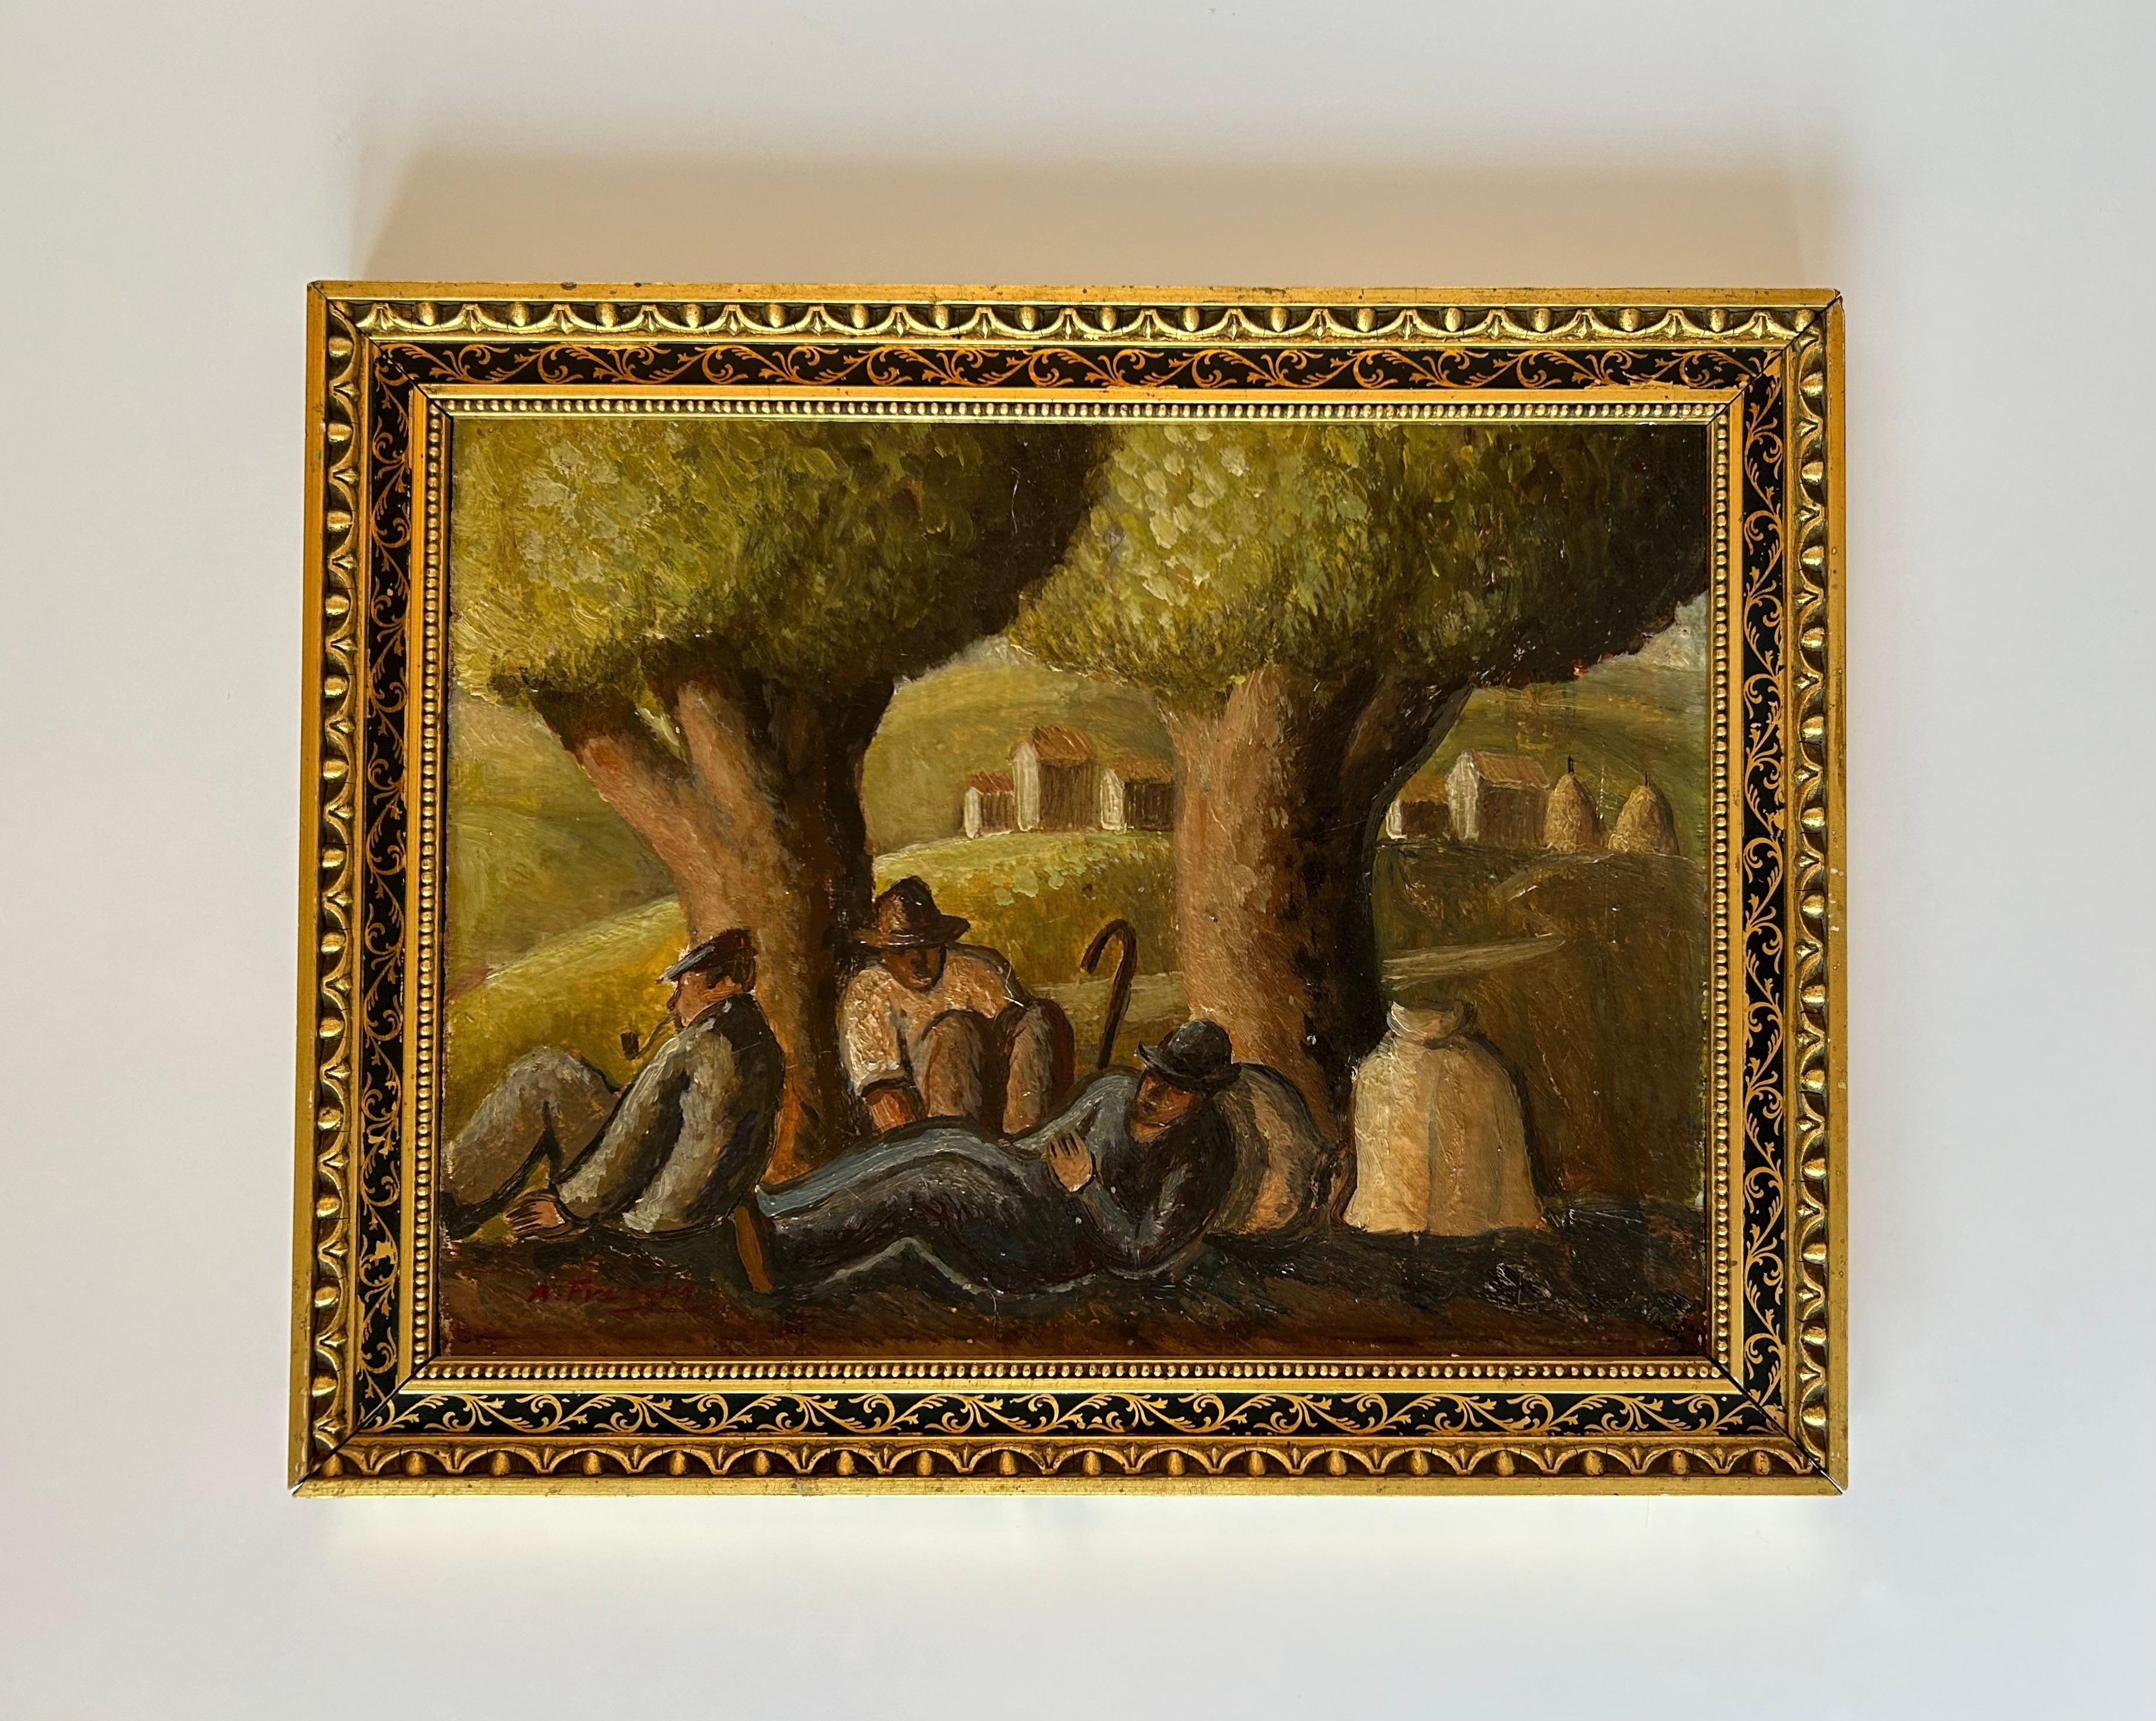 Une magnifique peinture italienne représentant des paysans au repos sous des arbres, avec des meules de foin et des bâtiments agricoles au loin. Huile sur panneau, fin du XIXe siècle ou début du XXe siècle, dans un cadre italien magnifiquement doré.